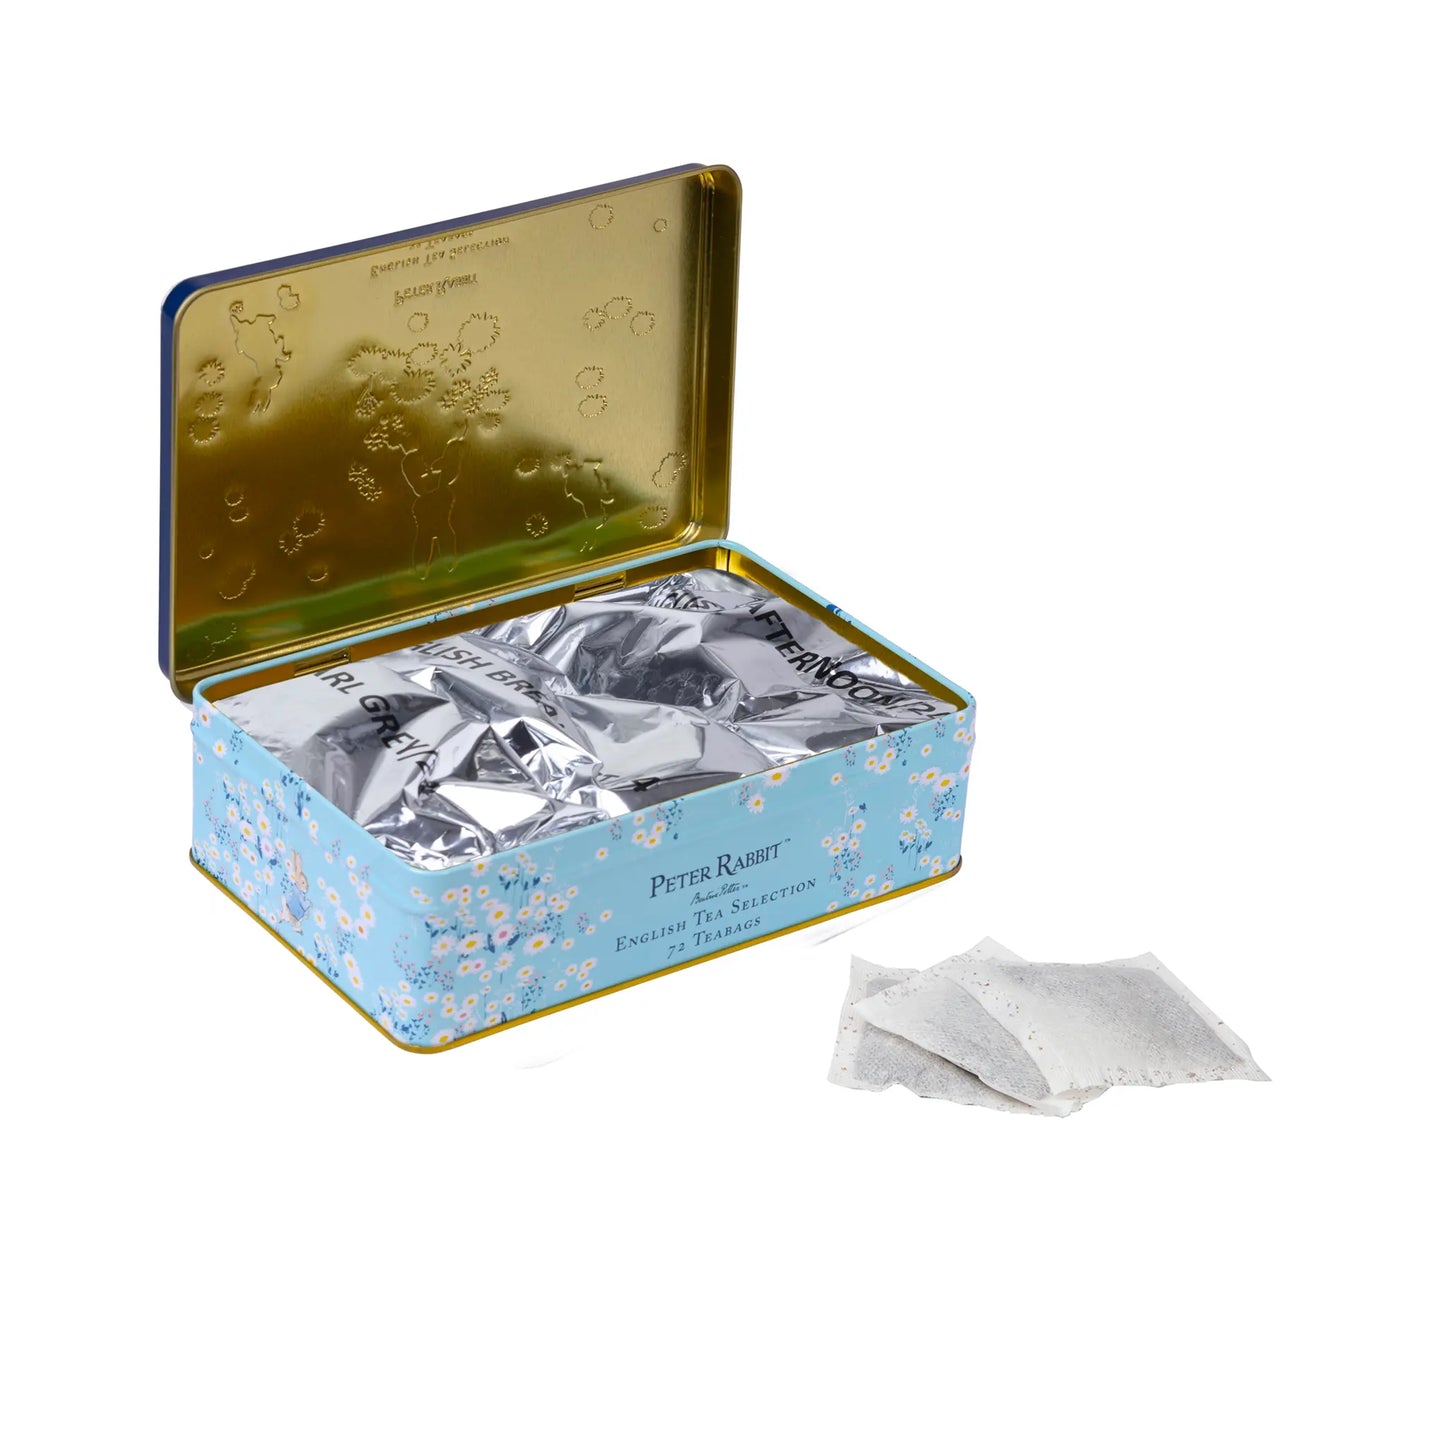 Peter Rabbit Daisies Tea Selection Tin Gift